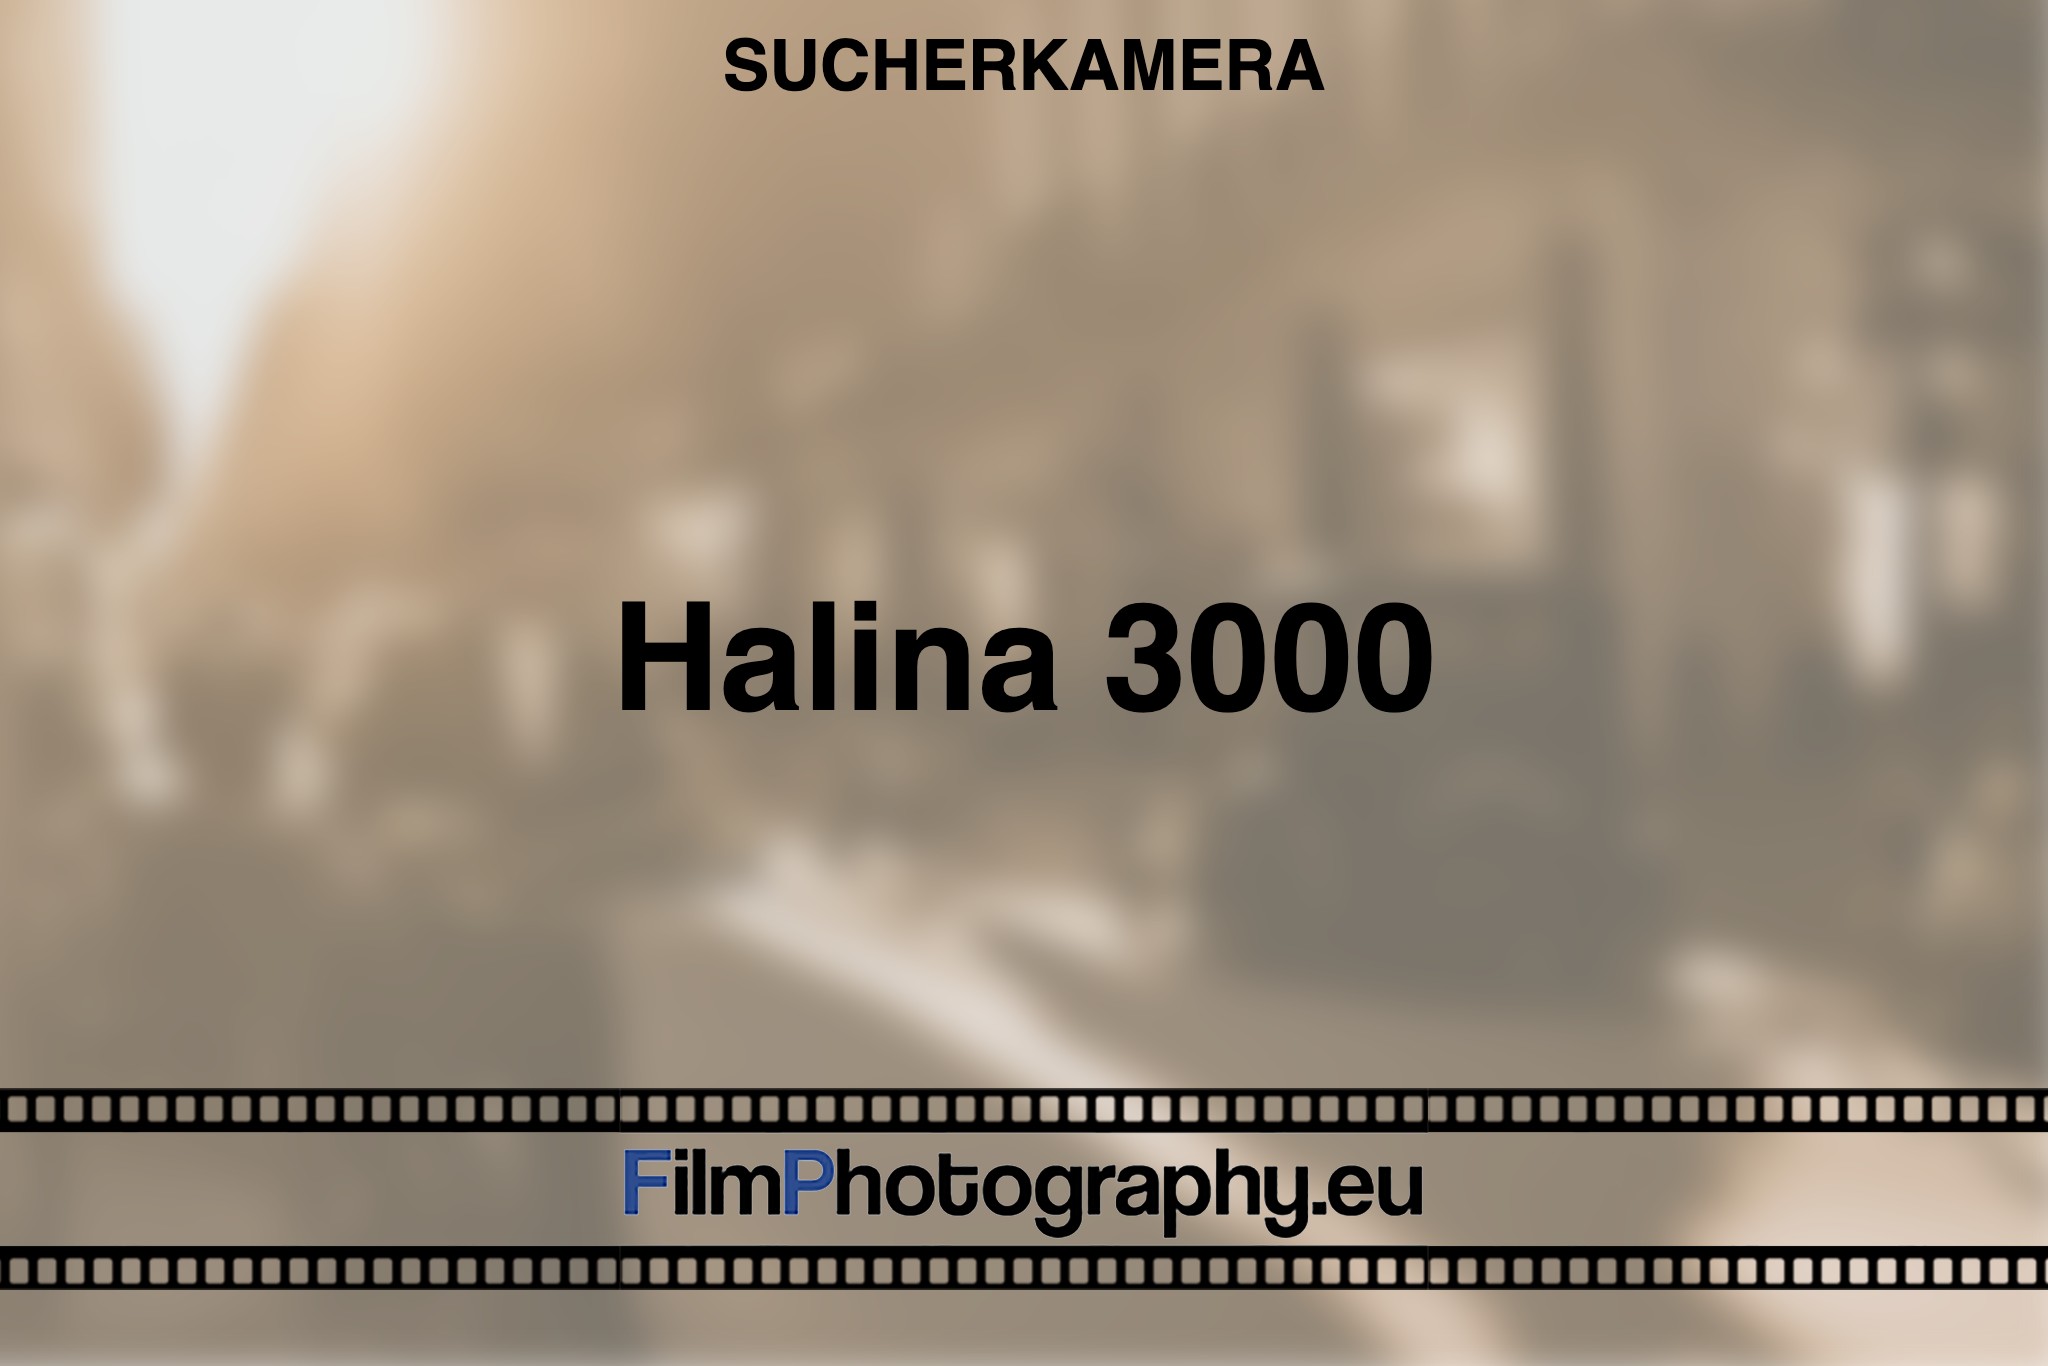 halina-3000-sucherkamera-bnv